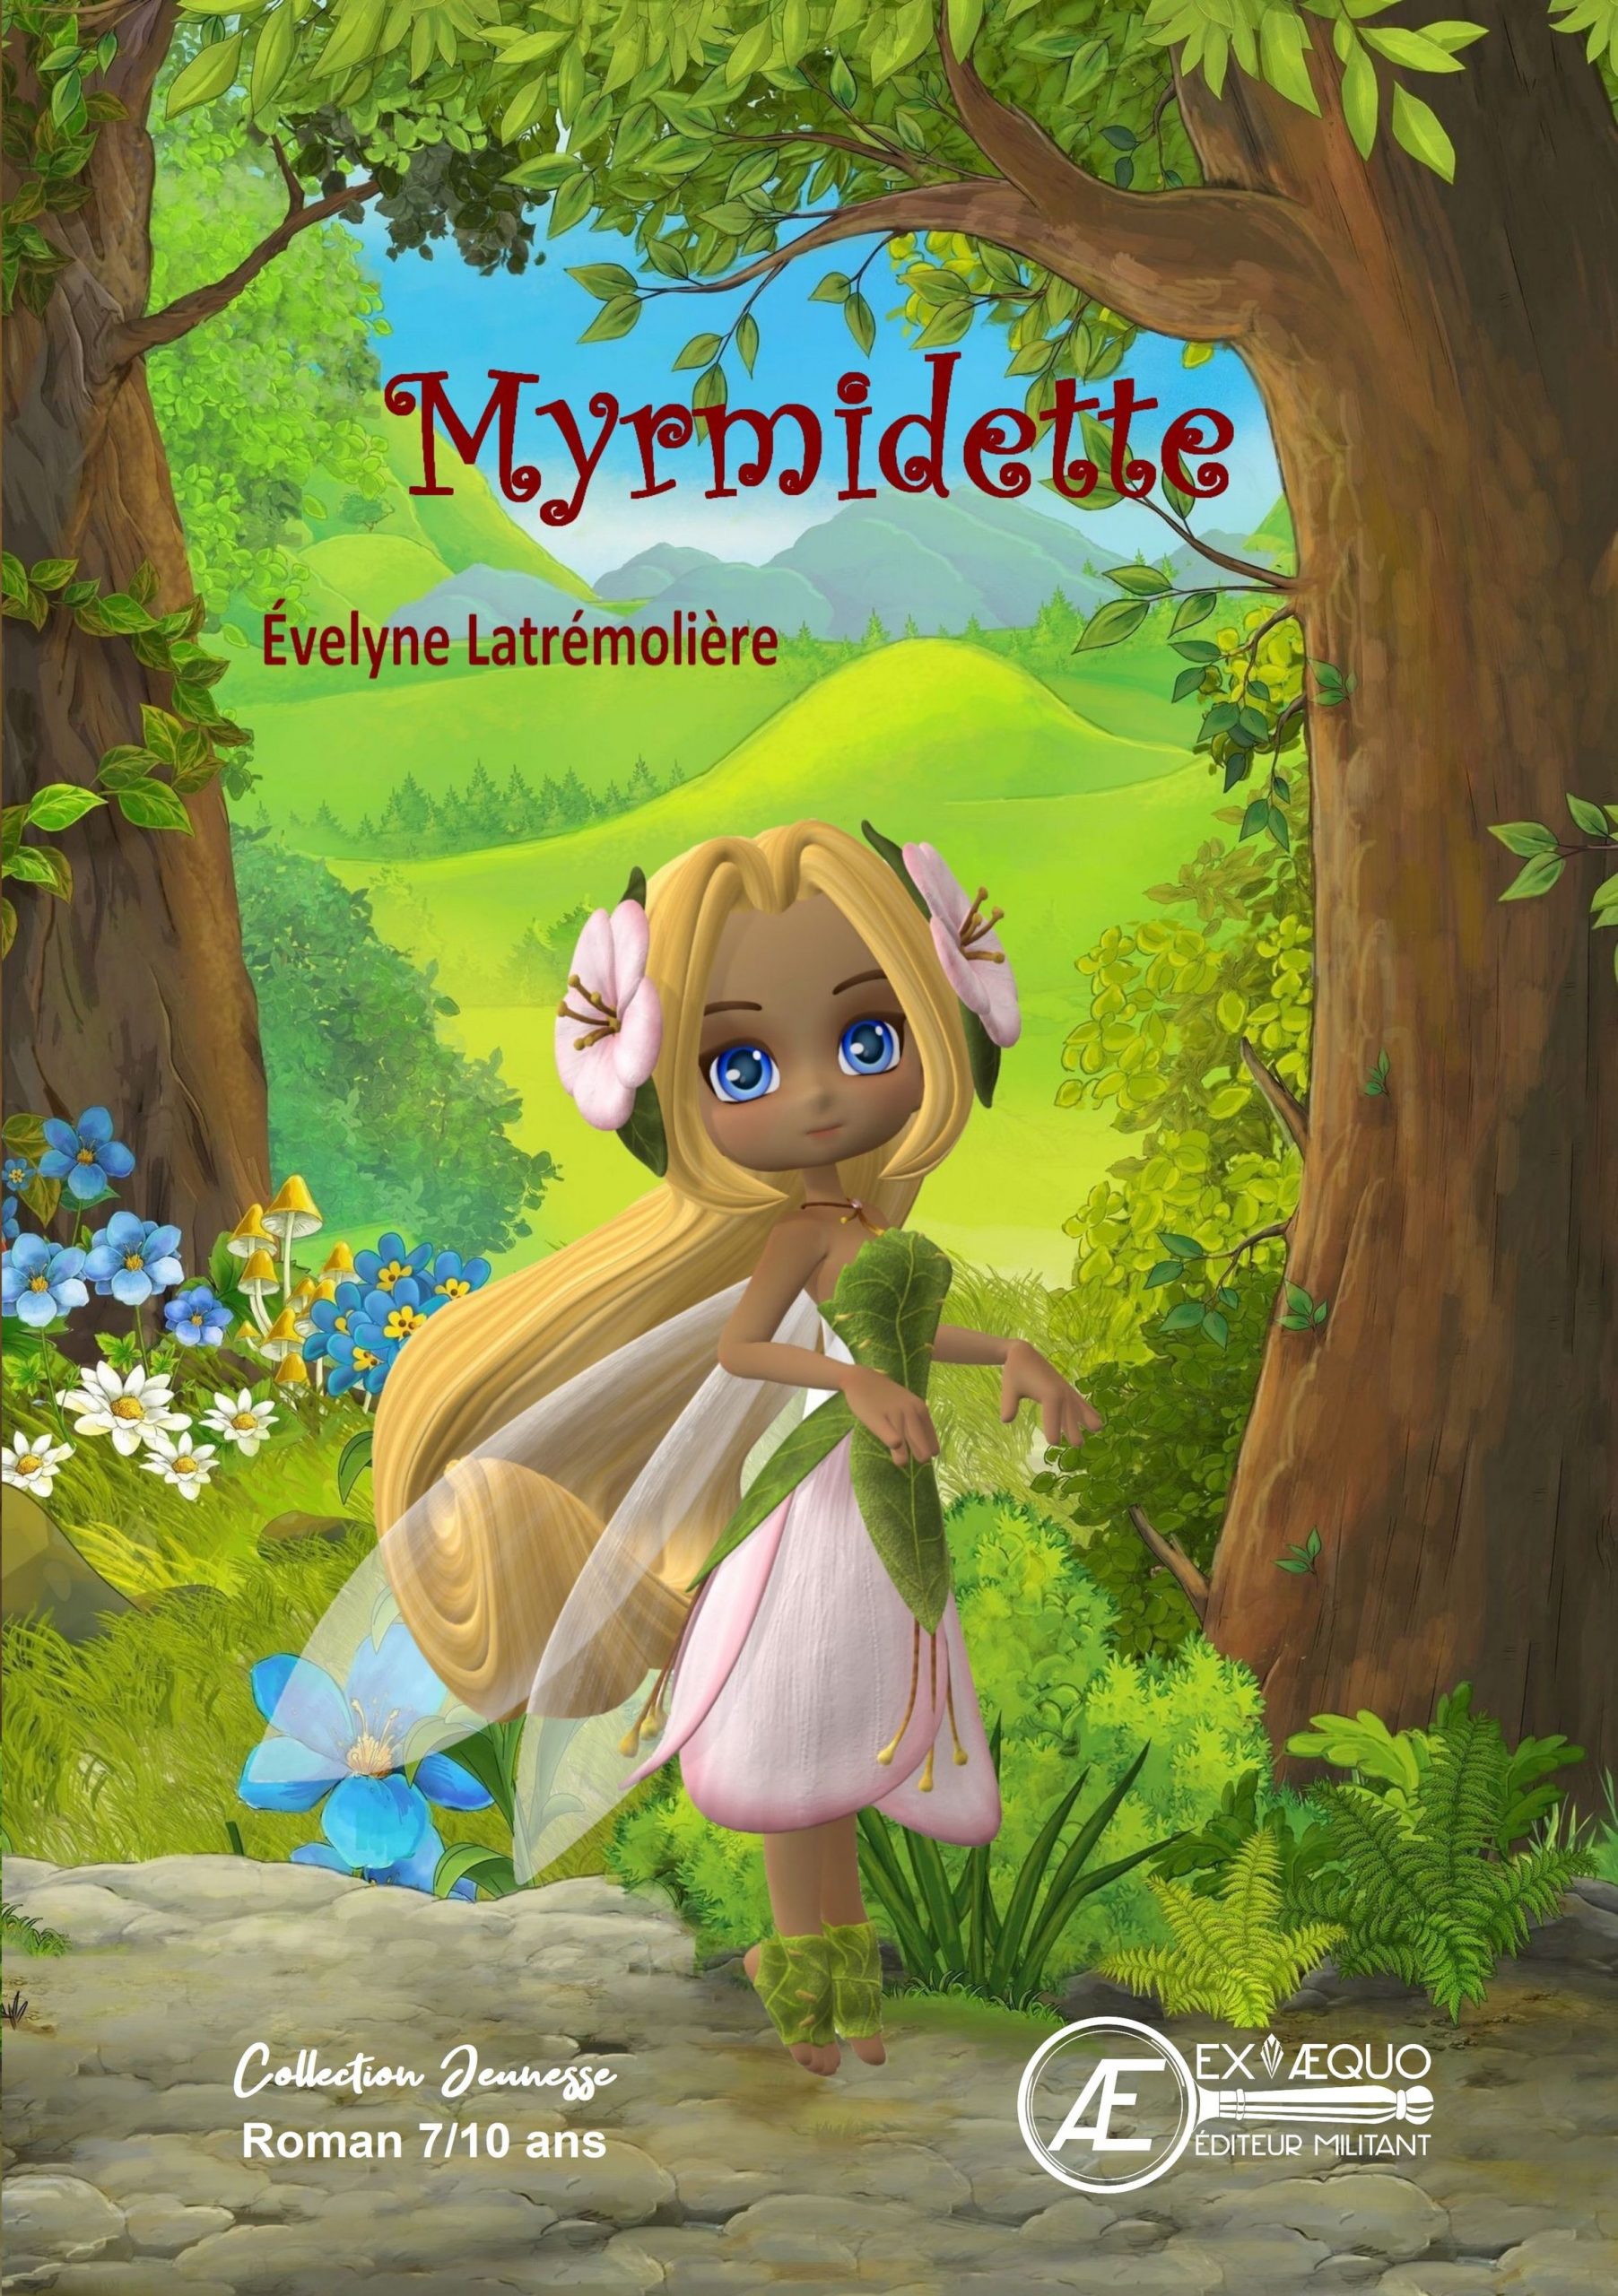 You are currently viewing Myrmidette, d’Evelyne Latrémolière